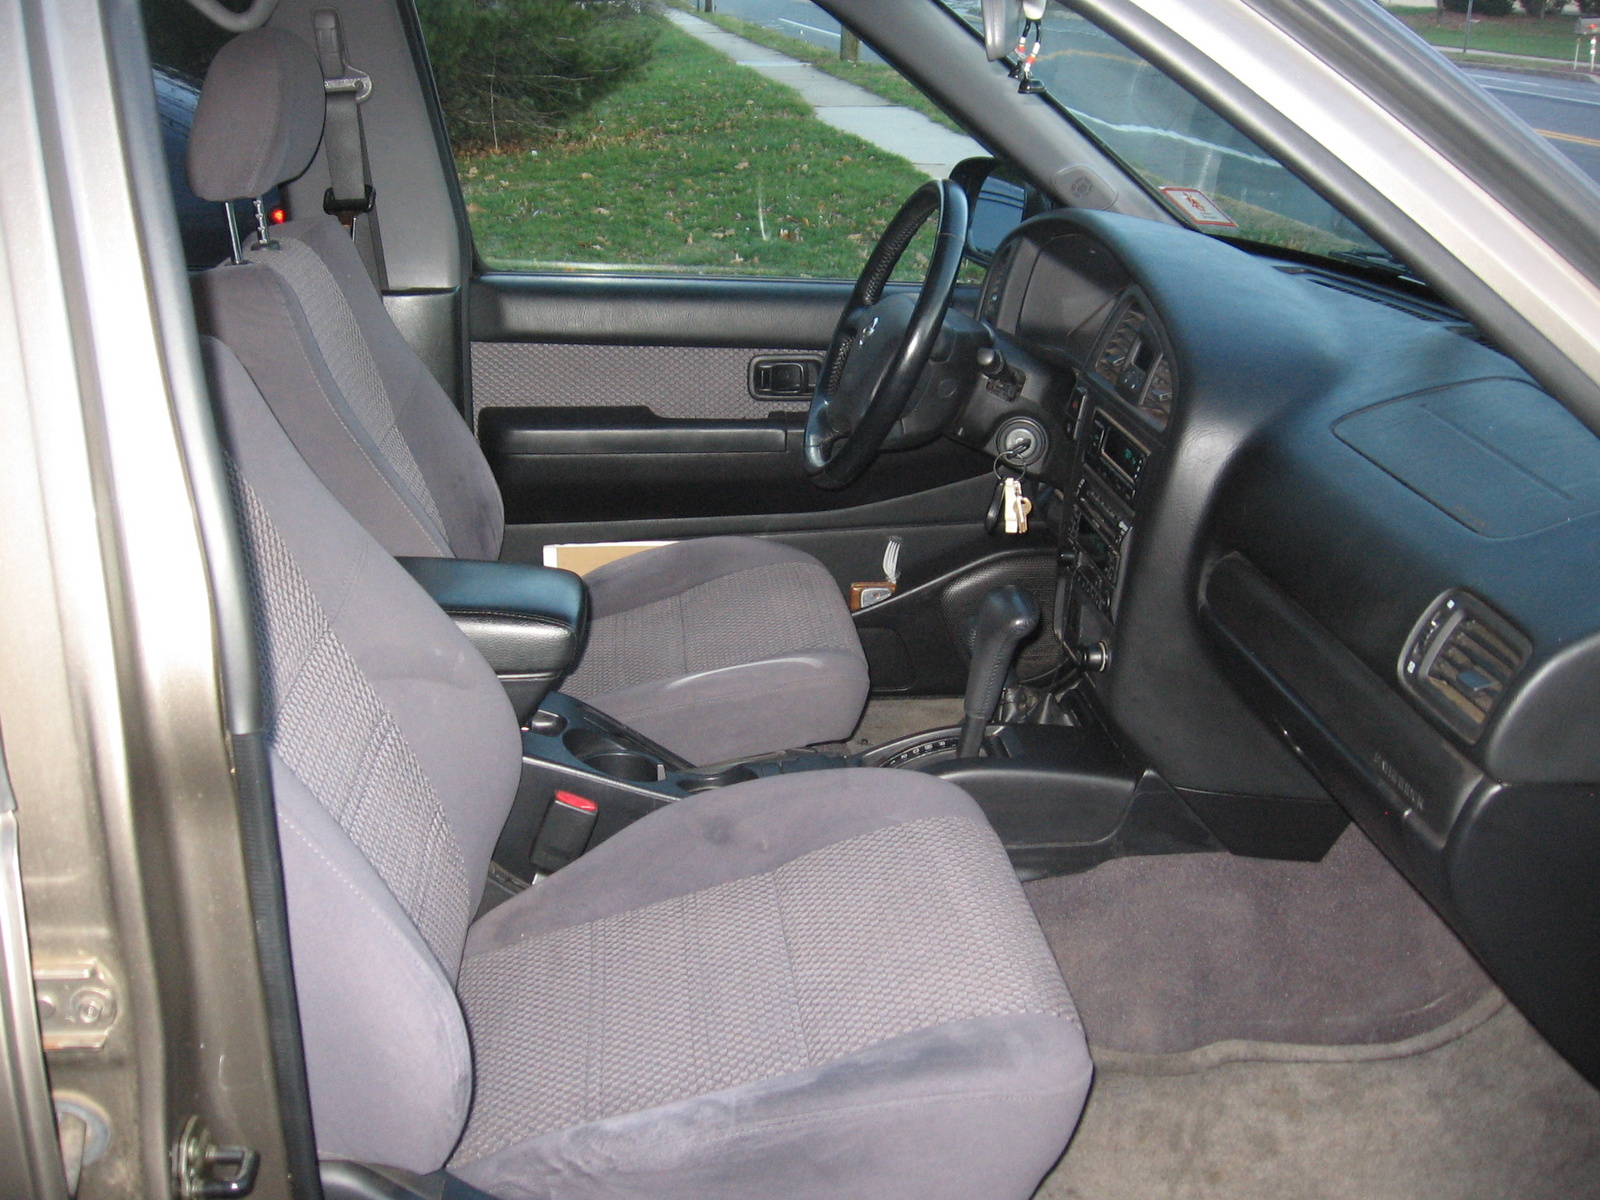 2002 Nissan pathfinder interior pictures #10